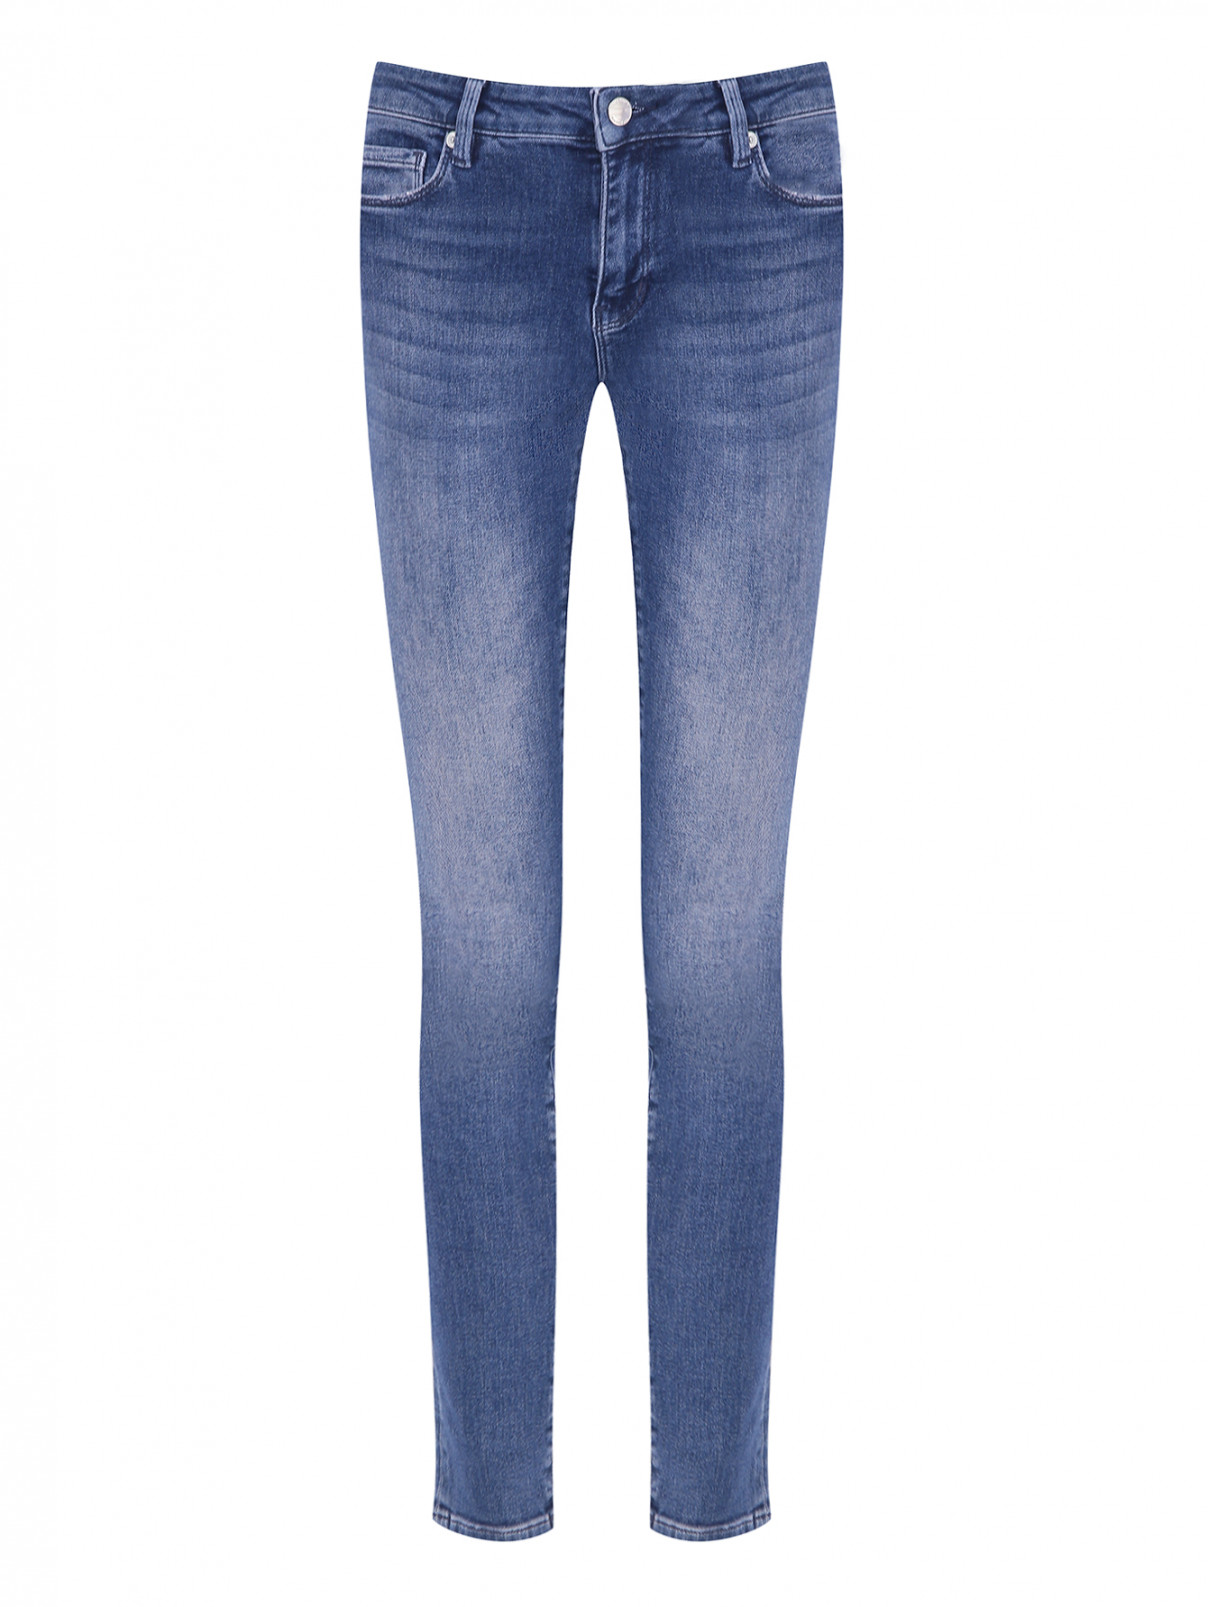 Зауженные джинсы с принтом Love Moschino  –  Общий вид  – Цвет:  Синий